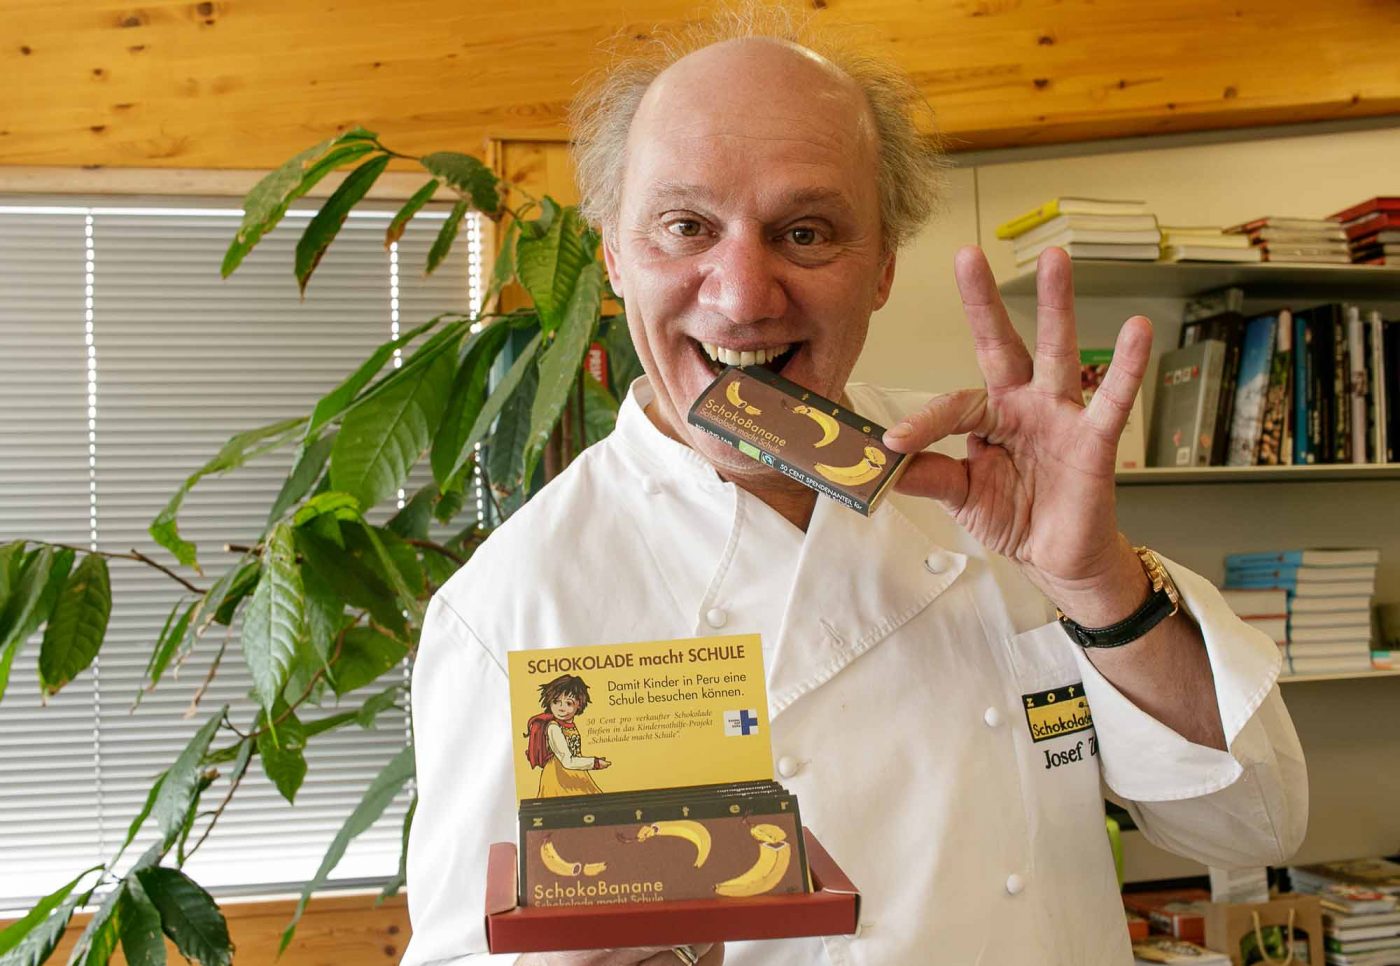 Das Ergebnis sei überwältigend und erfülle ihn mit Dankbarkeit und Demut, sagt Chocolatier Josef Zotter. Foto: Kindernothilfe